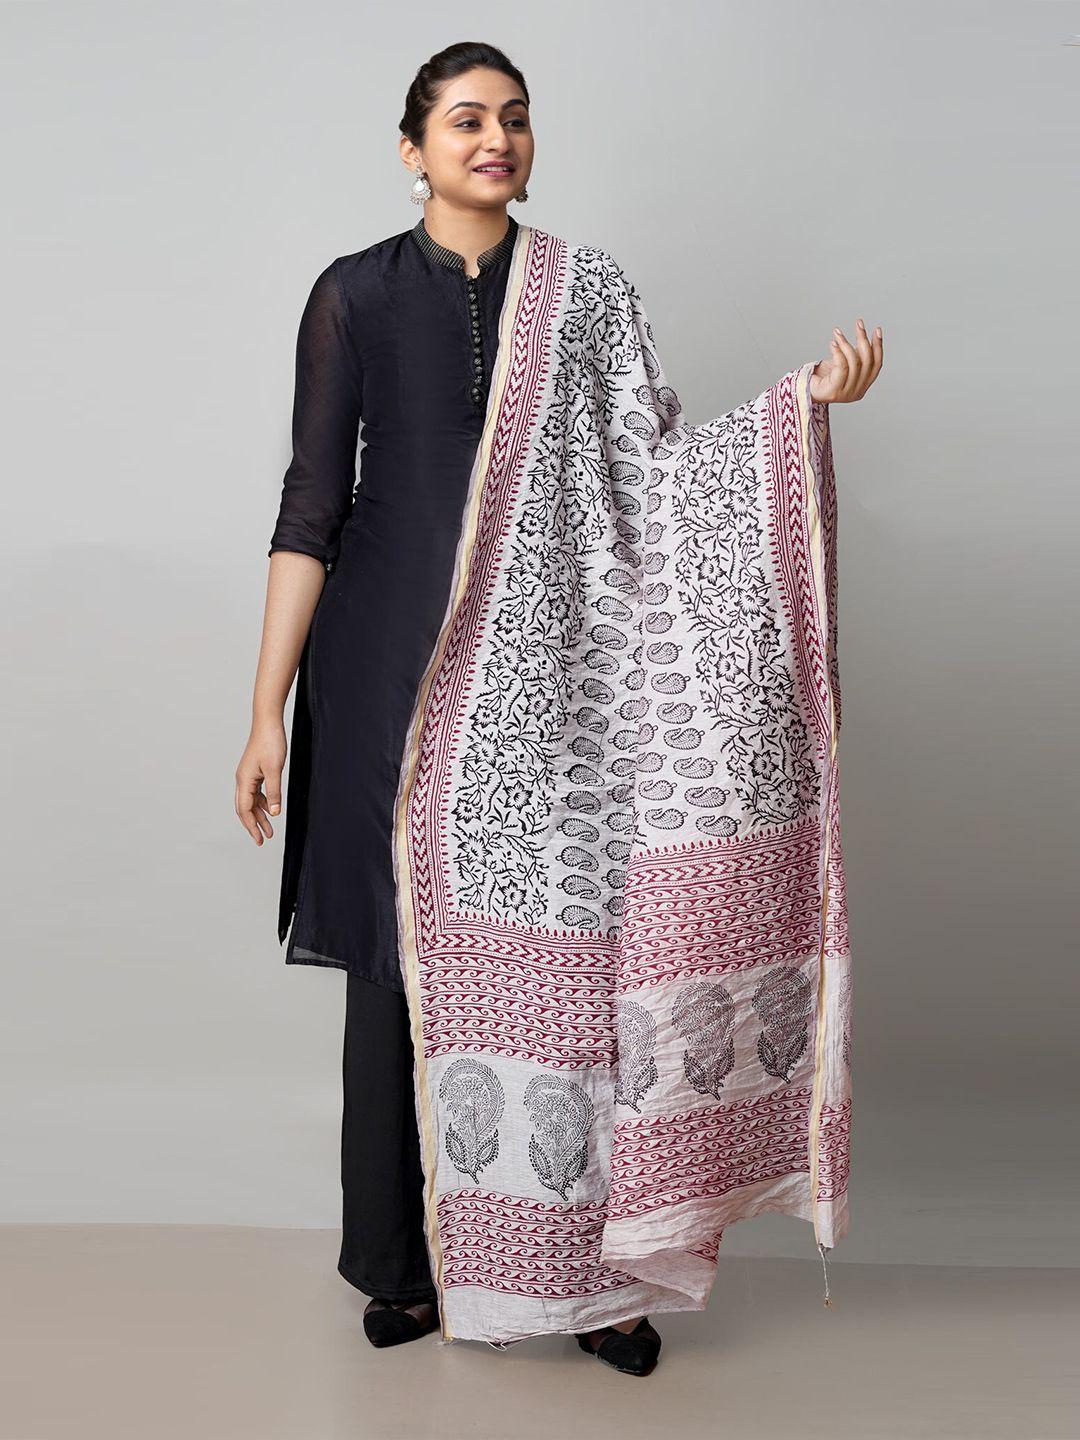 unnati-silks-off-white-&-black-ethnic-motifs-printed-pure-cotton-dupatta-with-zari